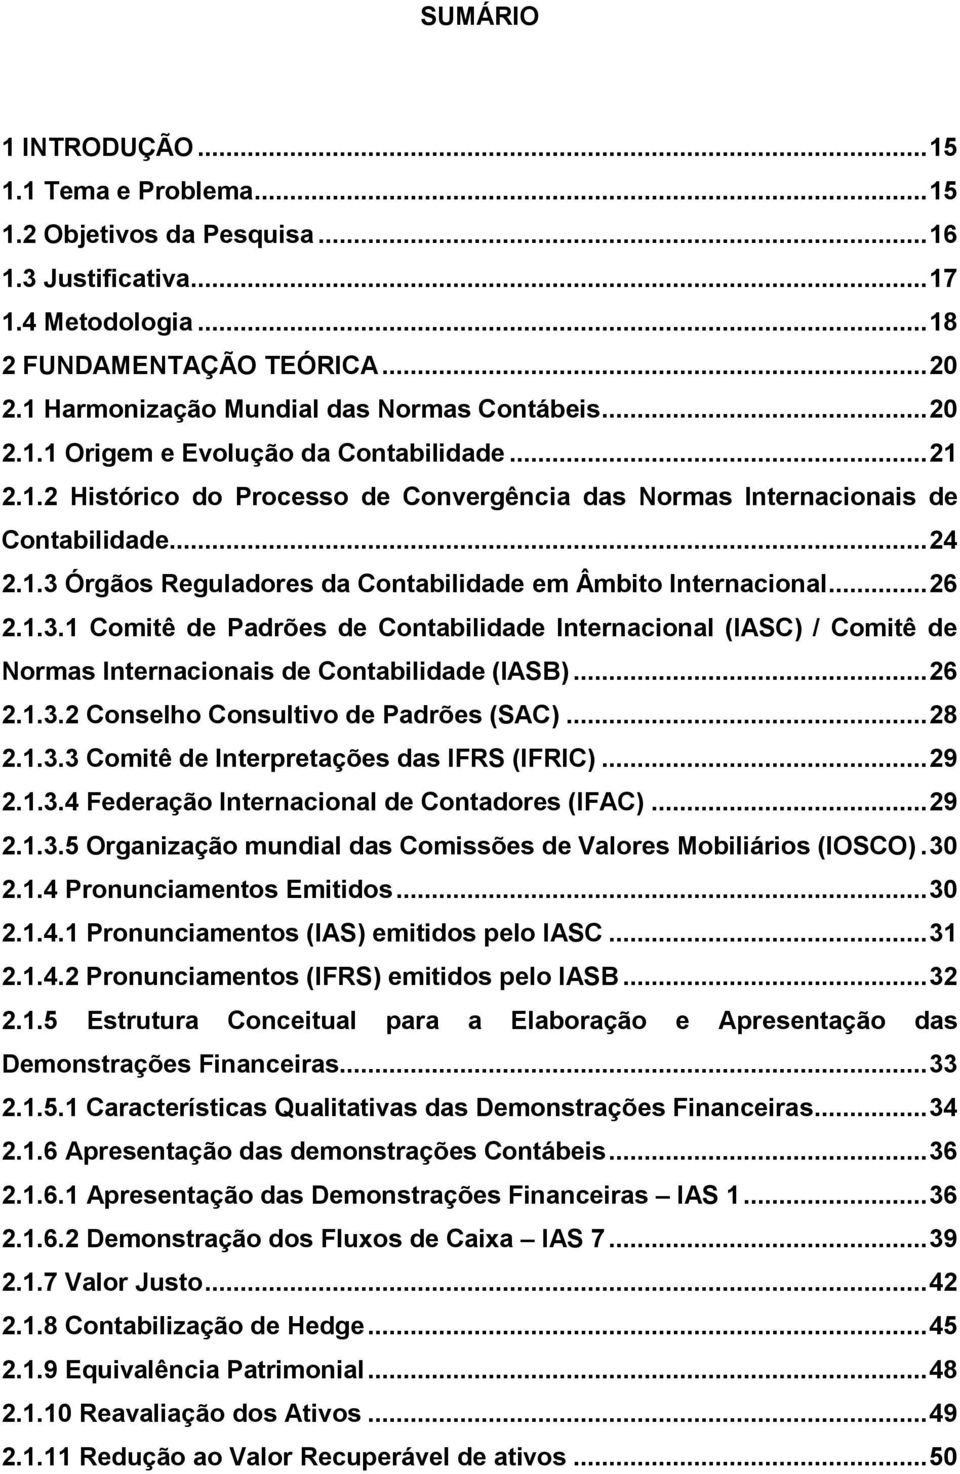 .. 26 2.1.3.1 Comitê de Padrões de Contabilidade Internacional (IASC) / Comitê de Normas Internacionais de Contabilidade (IASB)... 26 2.1.3.2 Conselho Consultivo de Padrões (SAC)... 28 2.1.3.3 Comitê de Interpretações das IFRS (IFRIC).